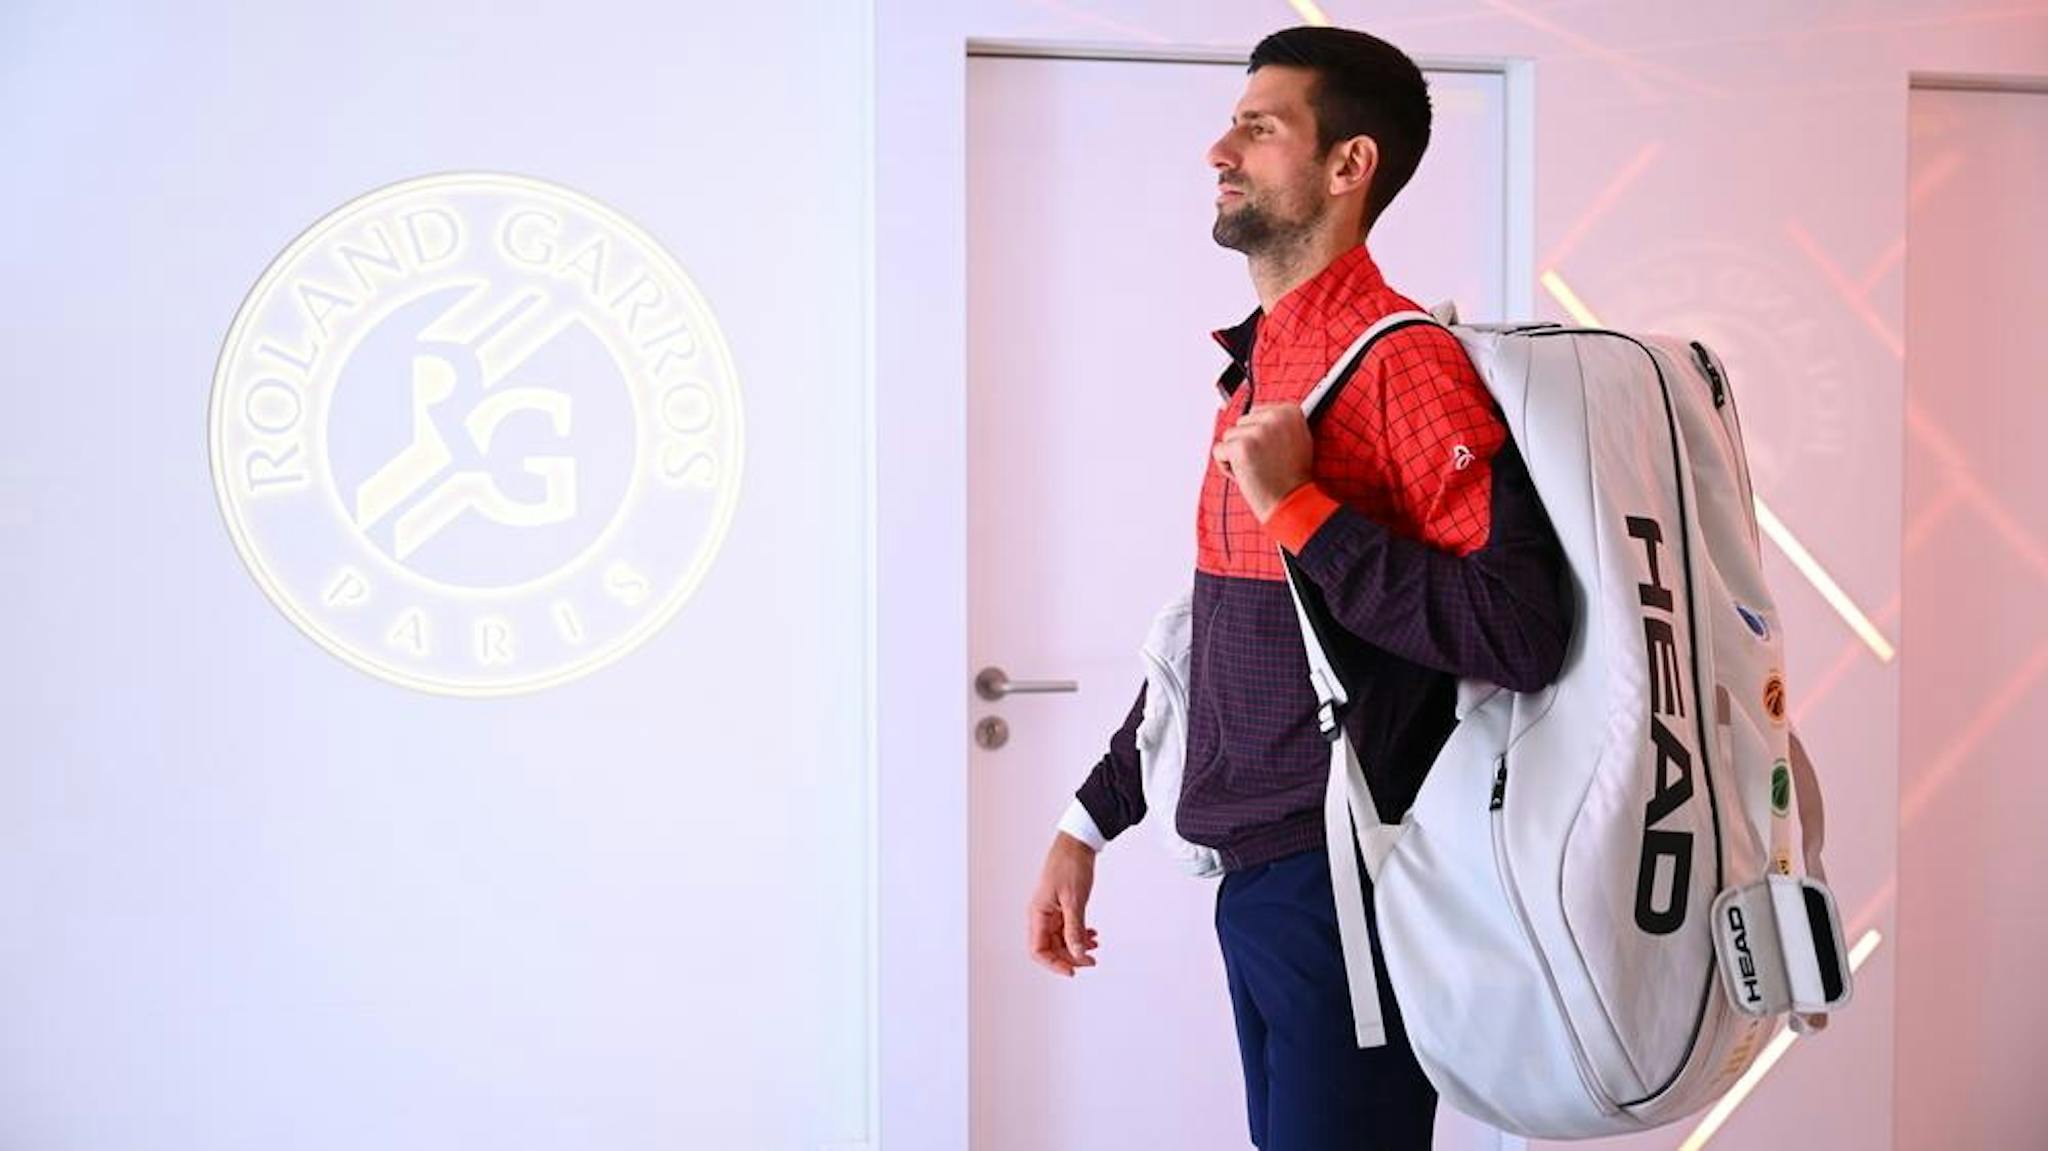 Comme Novak Djokovic, soyez sûr de votre plan de jeu avant d'entrer sur le court, vous serez prêt dès le premier point !